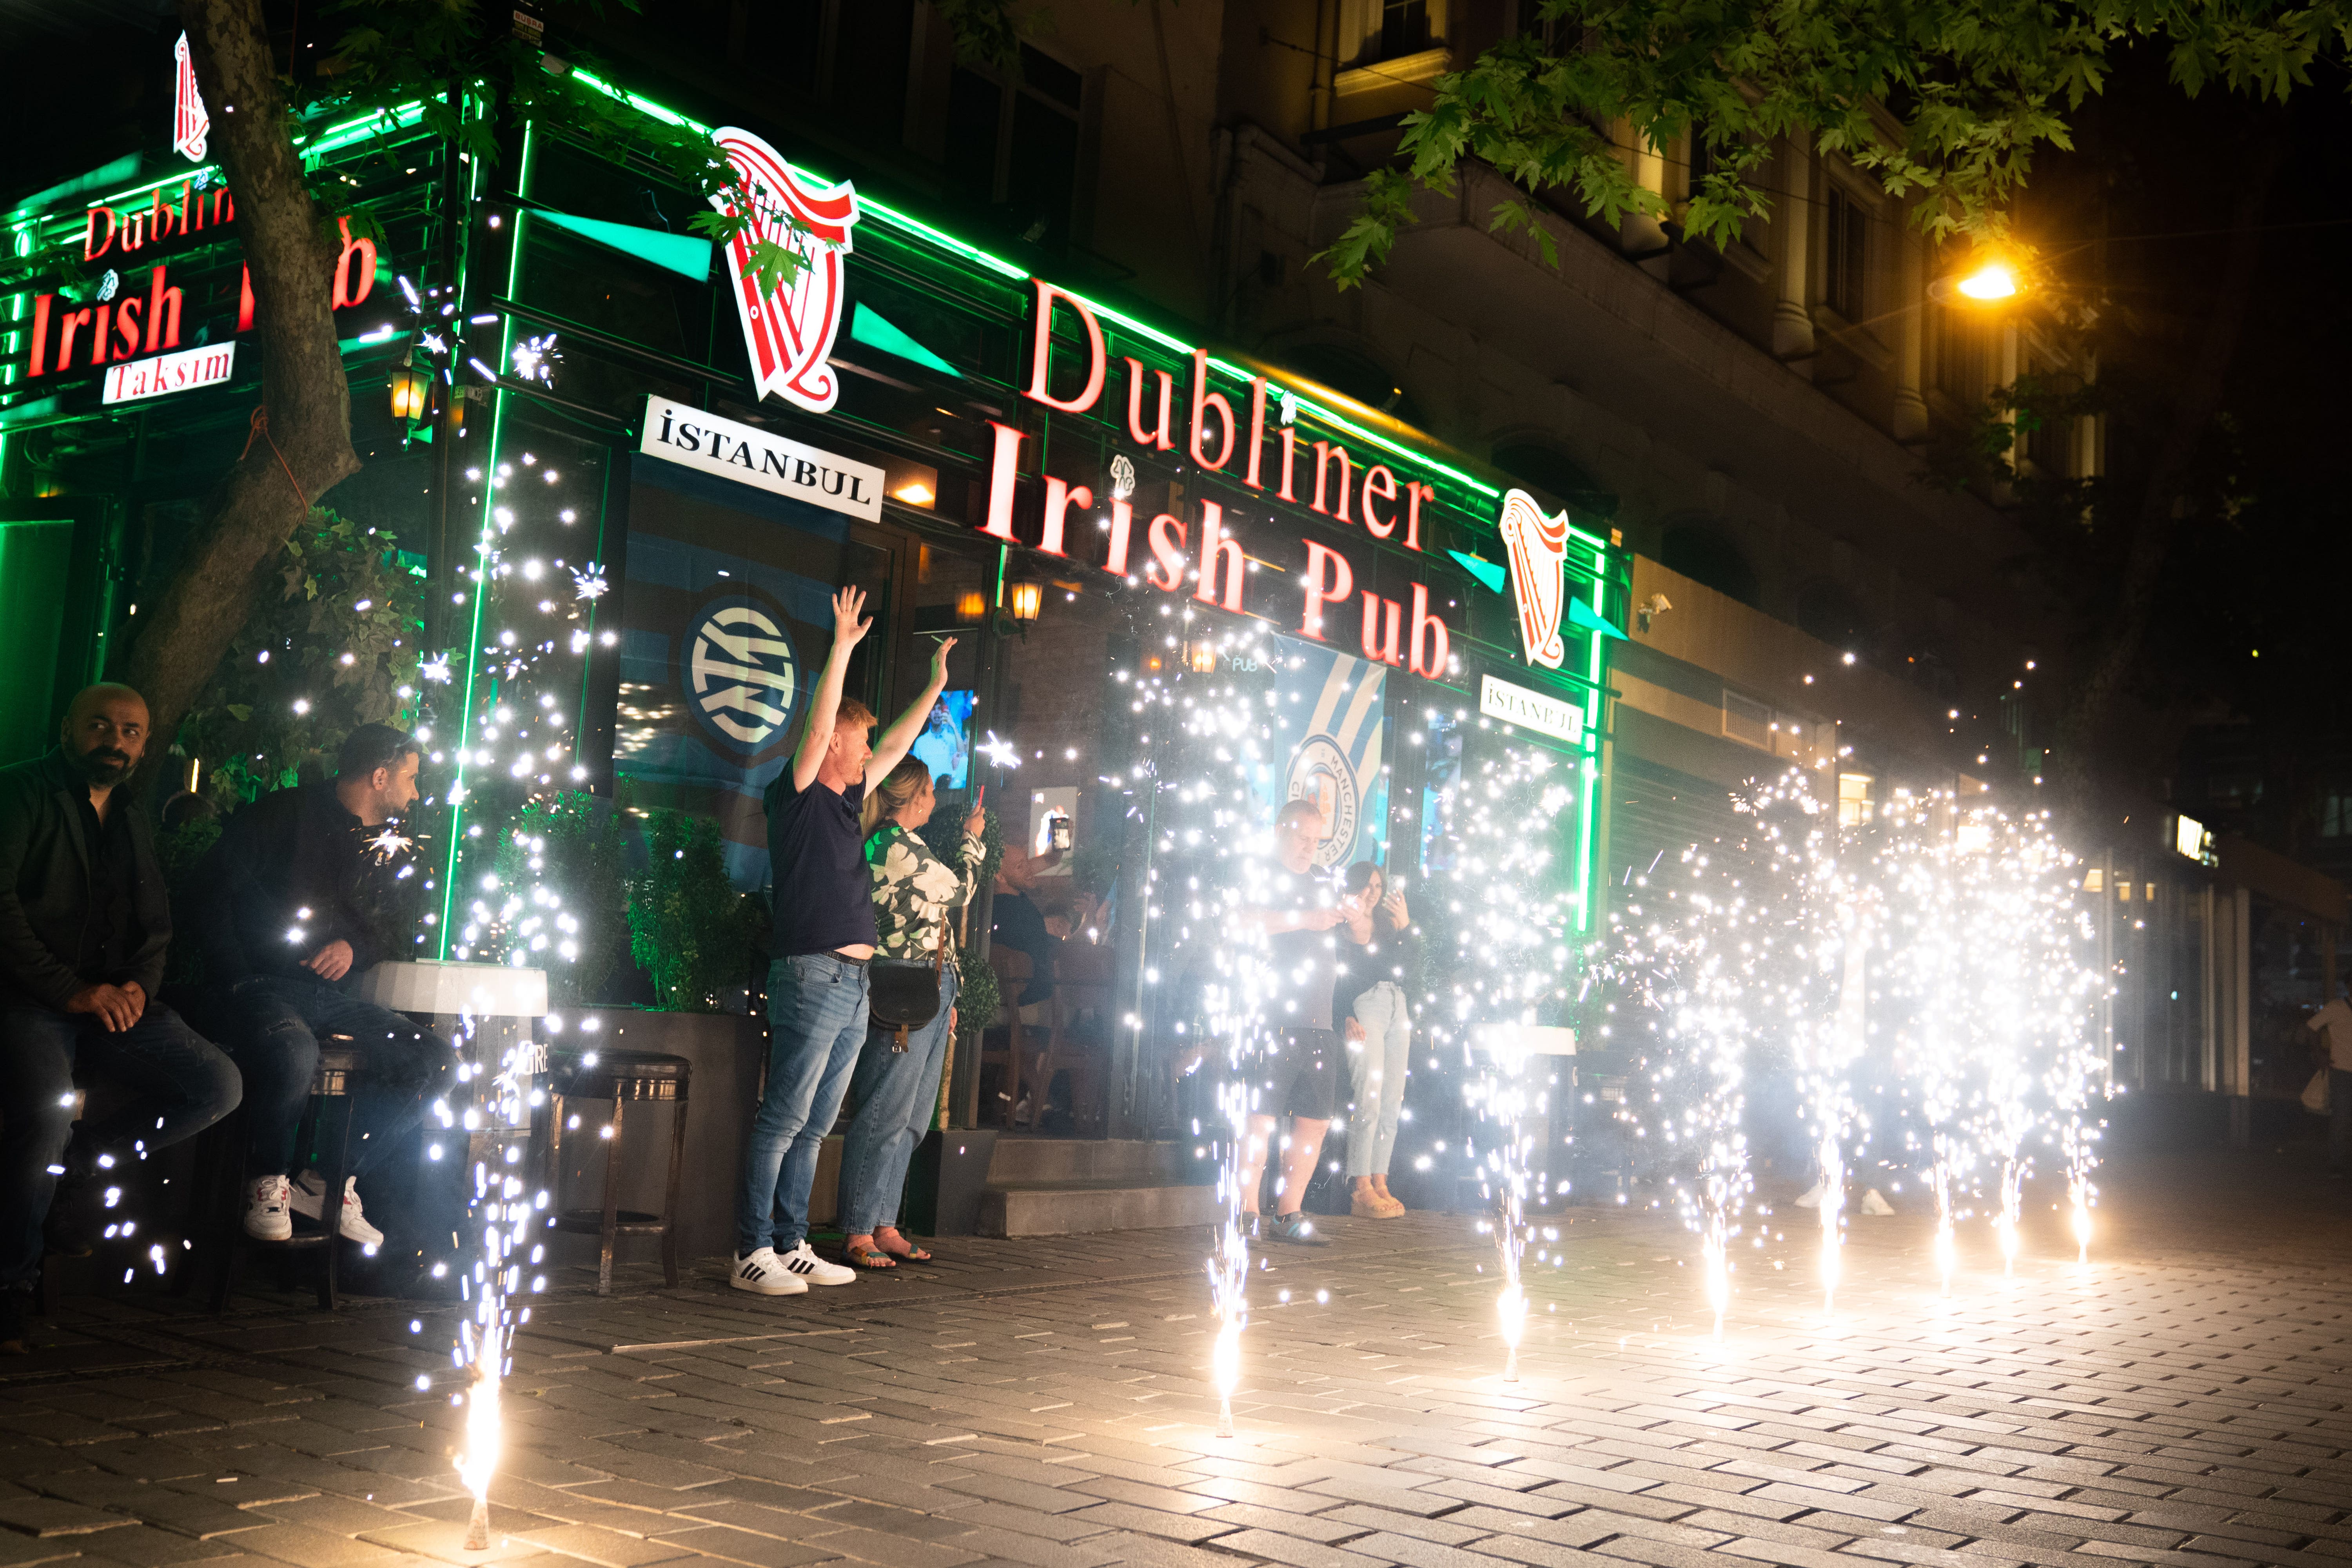 Man City fans outside the Dubliner in Istanbul on Thursday.